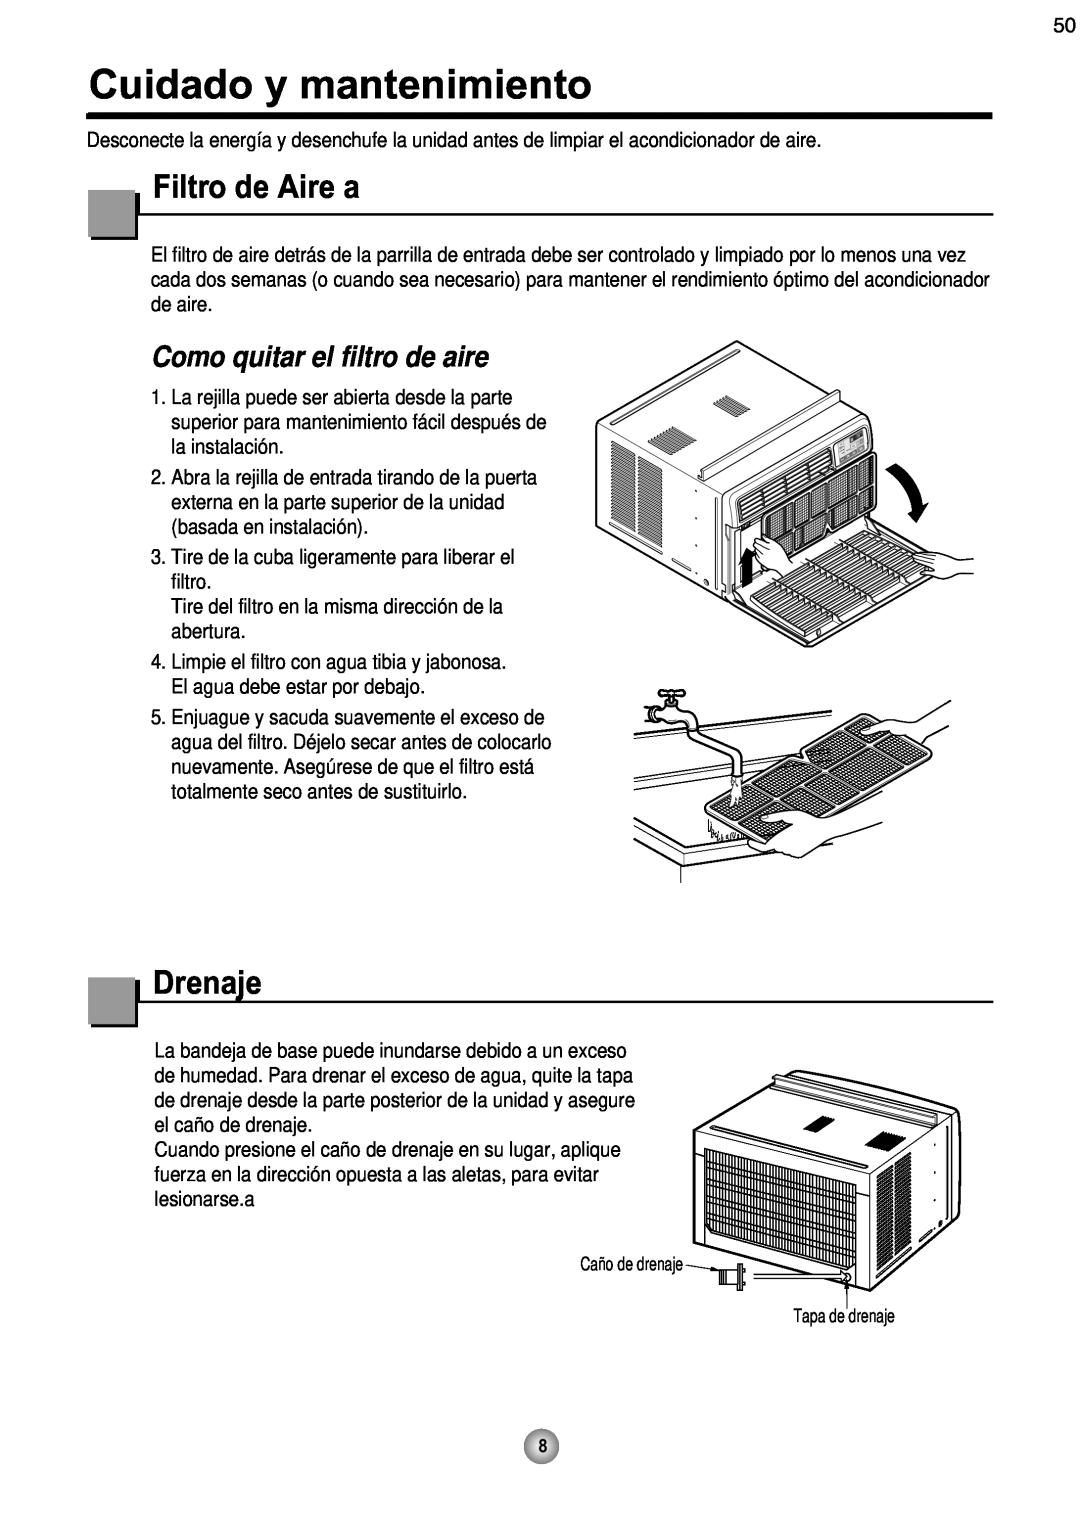 Friedrich CP08 operation manual Cuidado y mantenimiento, Filtro de Aire a, Drenaje, Como quitar el filtro de aire 